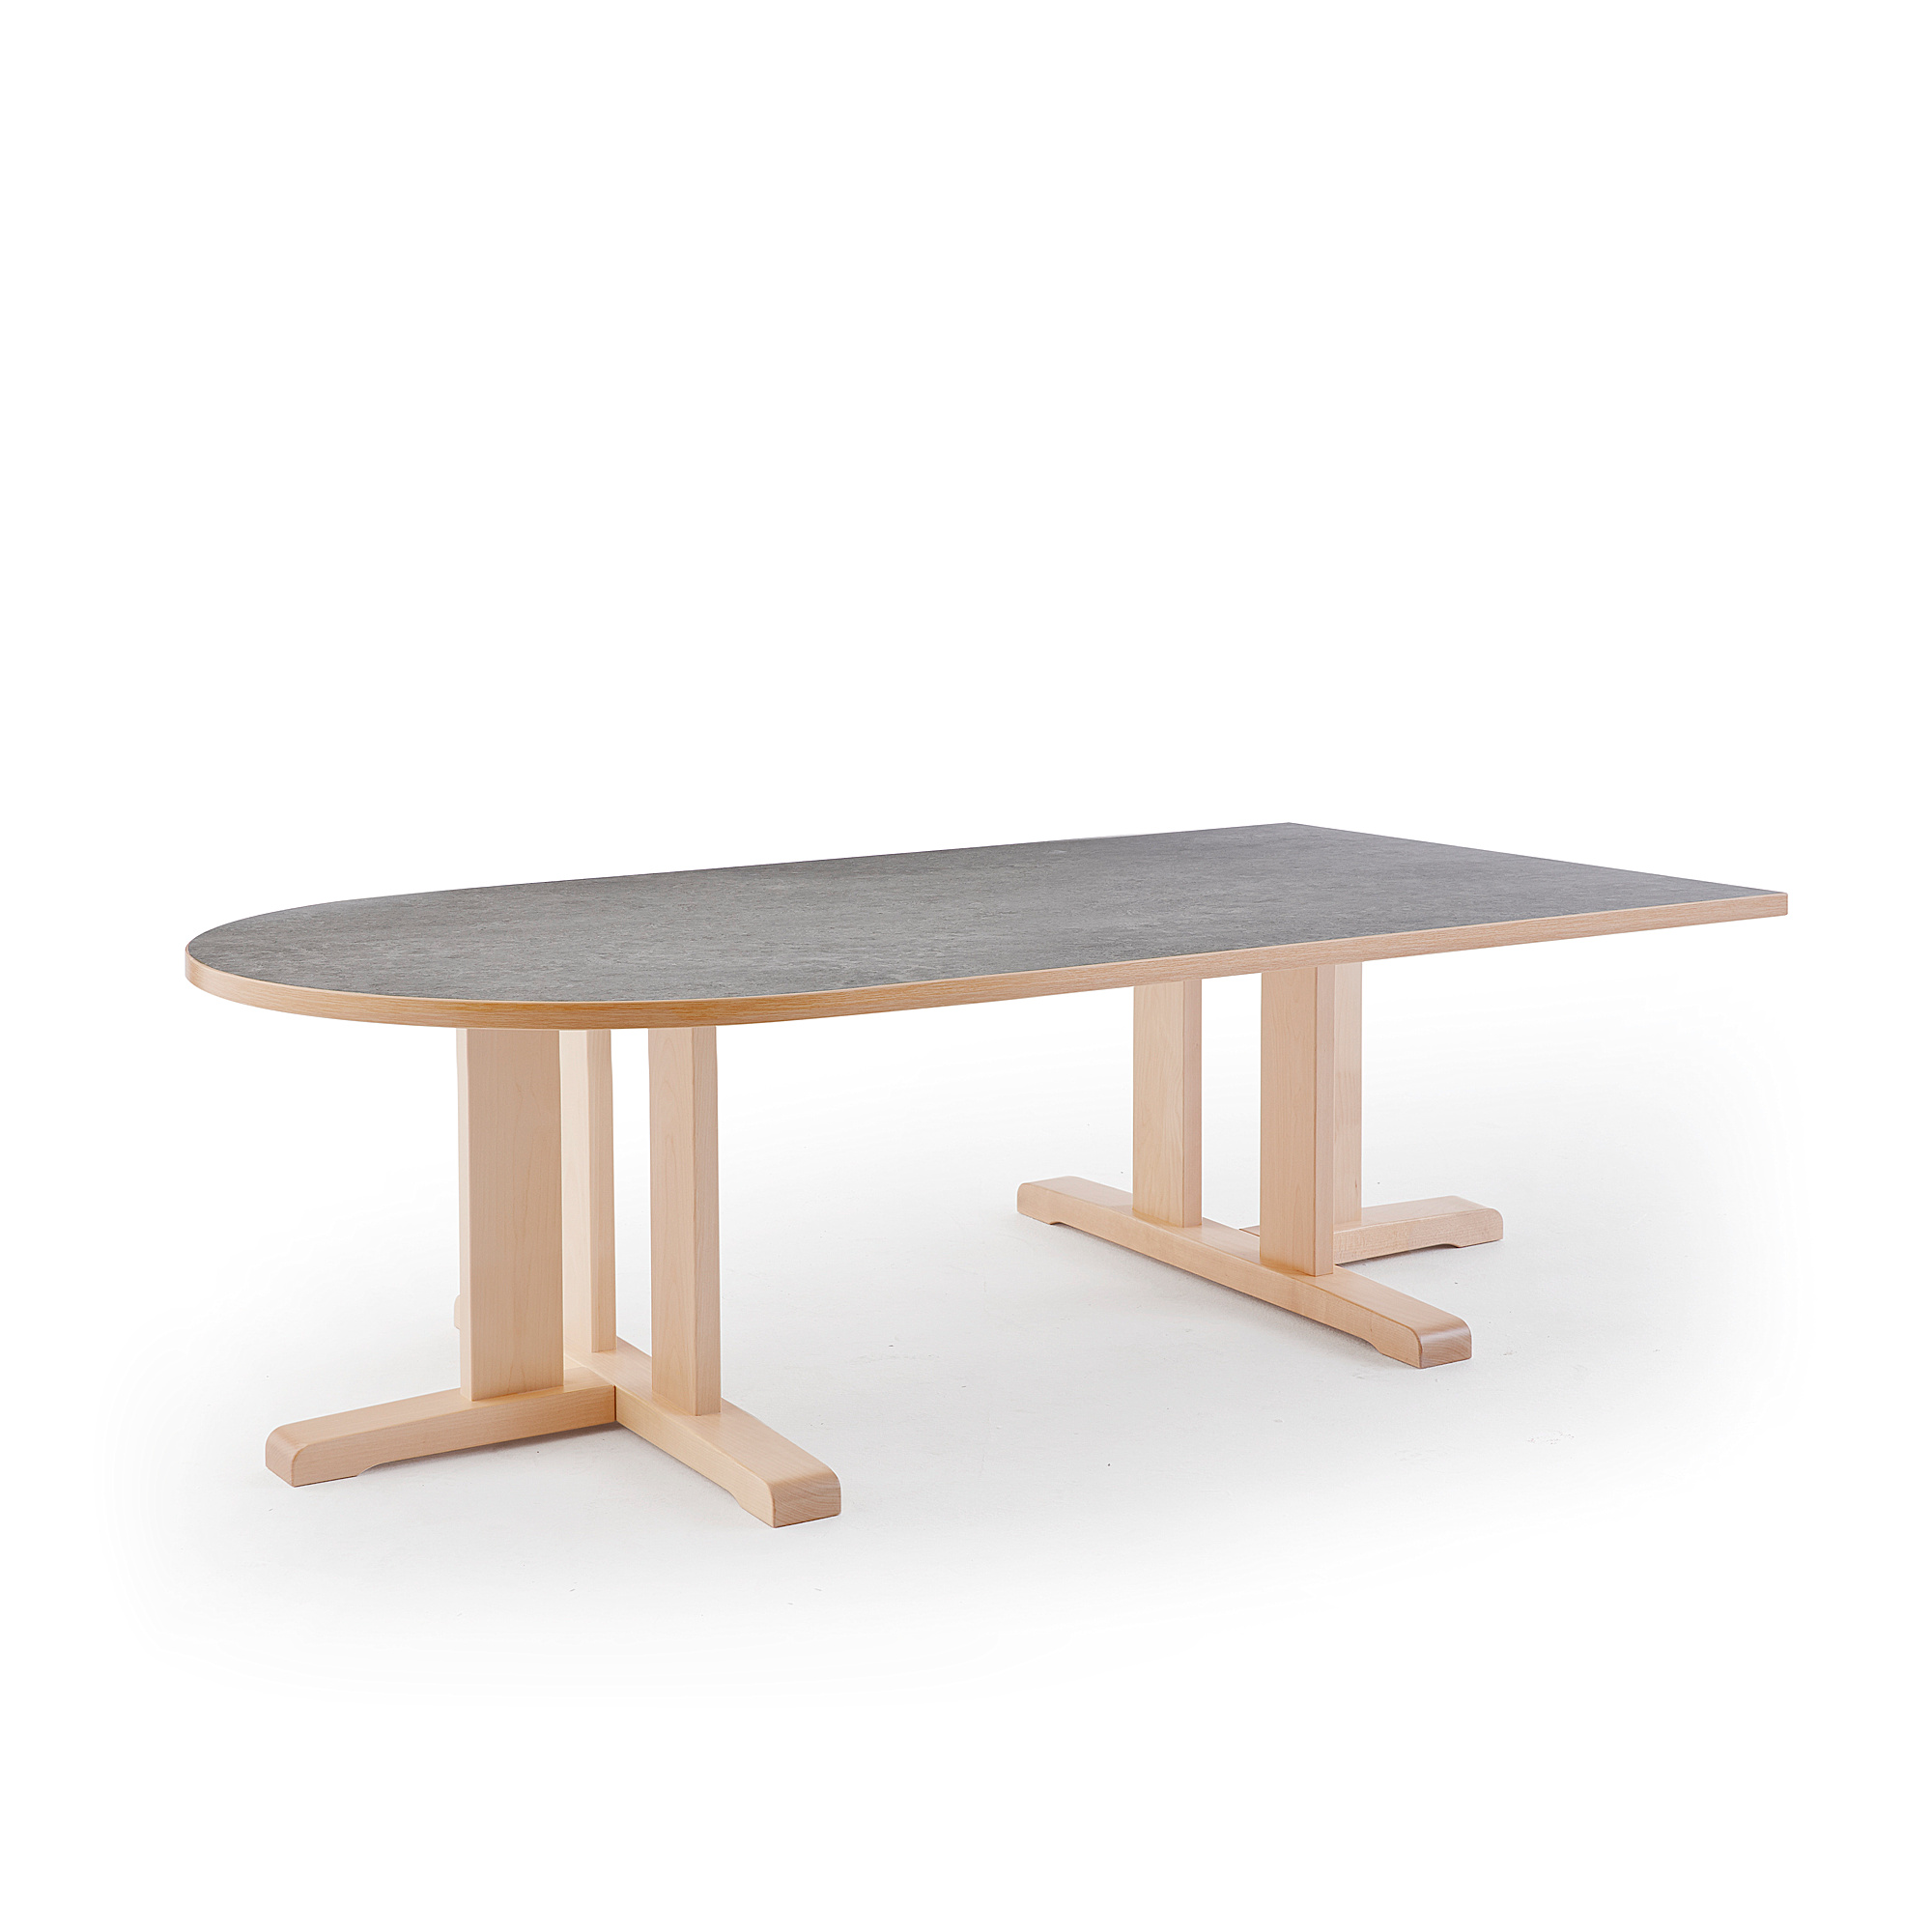 Stůl KUPOL, 1800x800x500 mm, půlovál, akustické linoleum, bříza/šedá